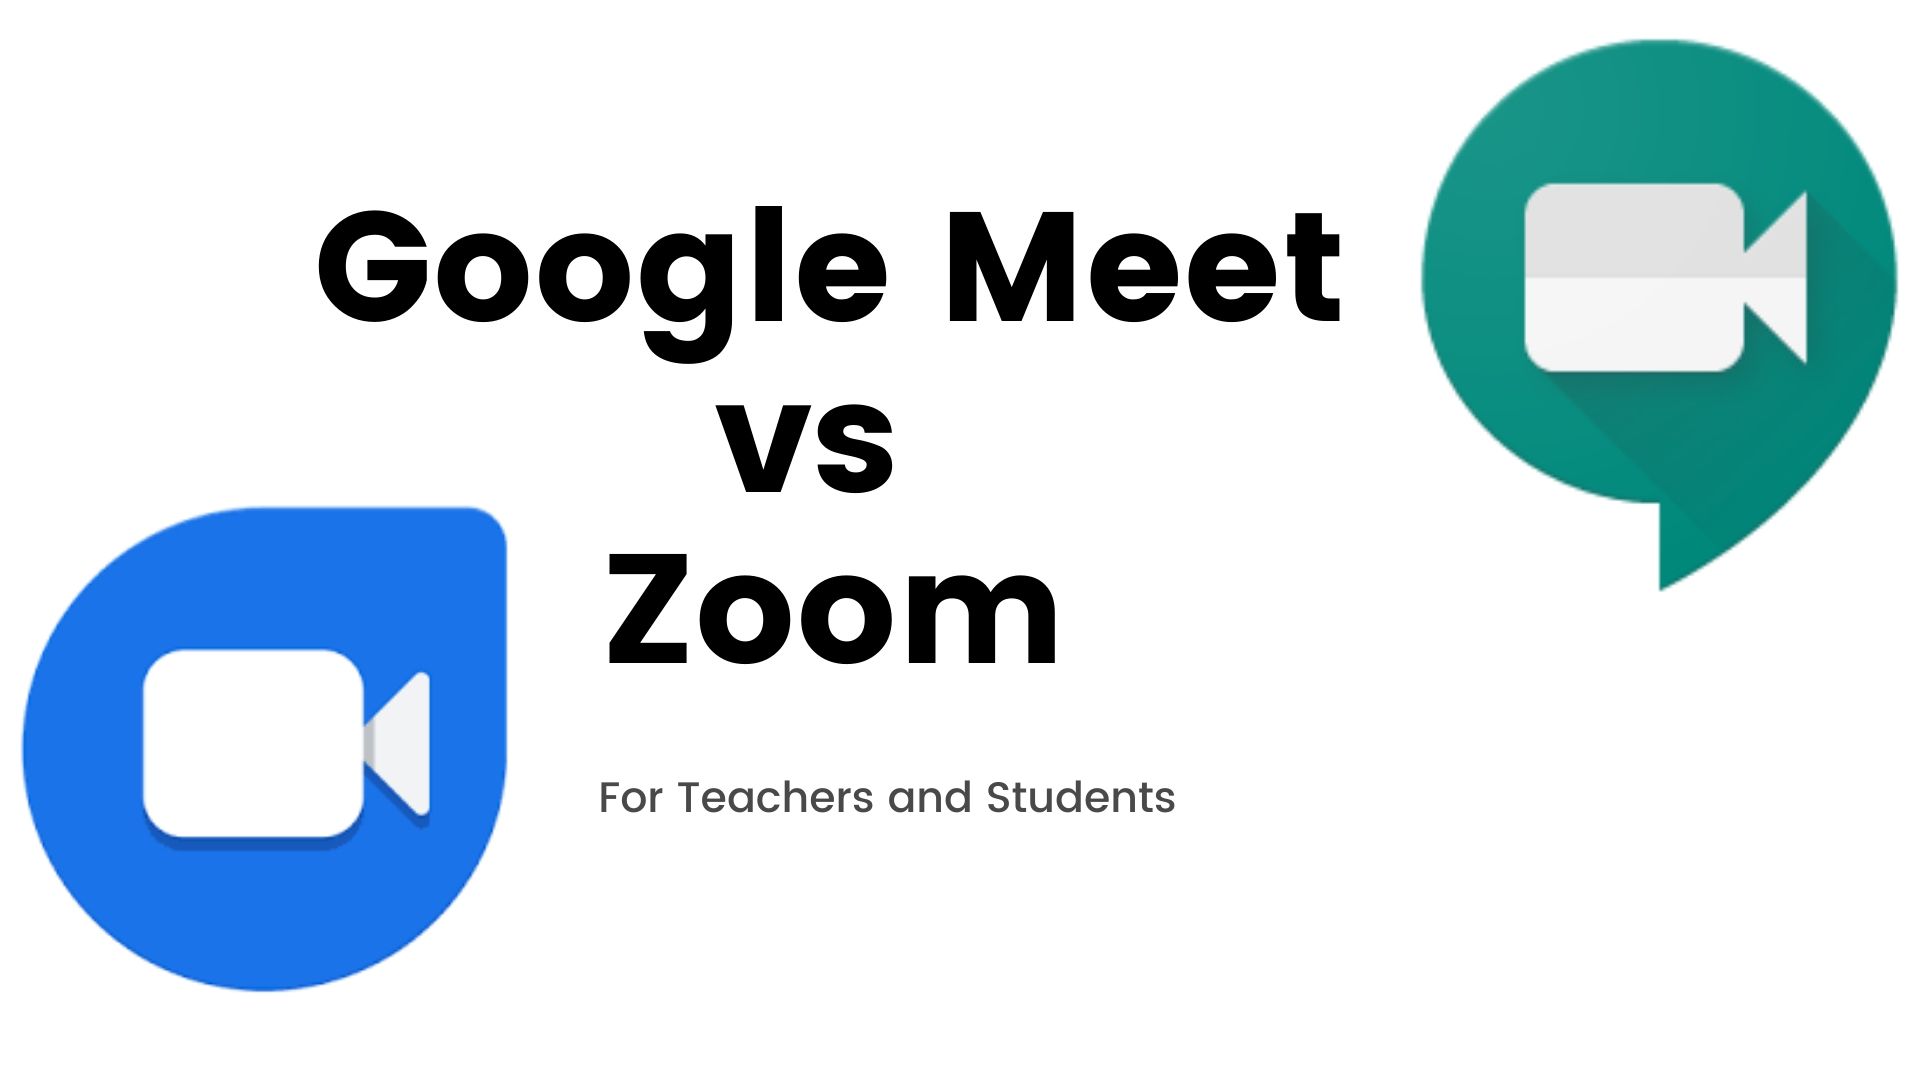 Google Meet vs Zoom for Teachers